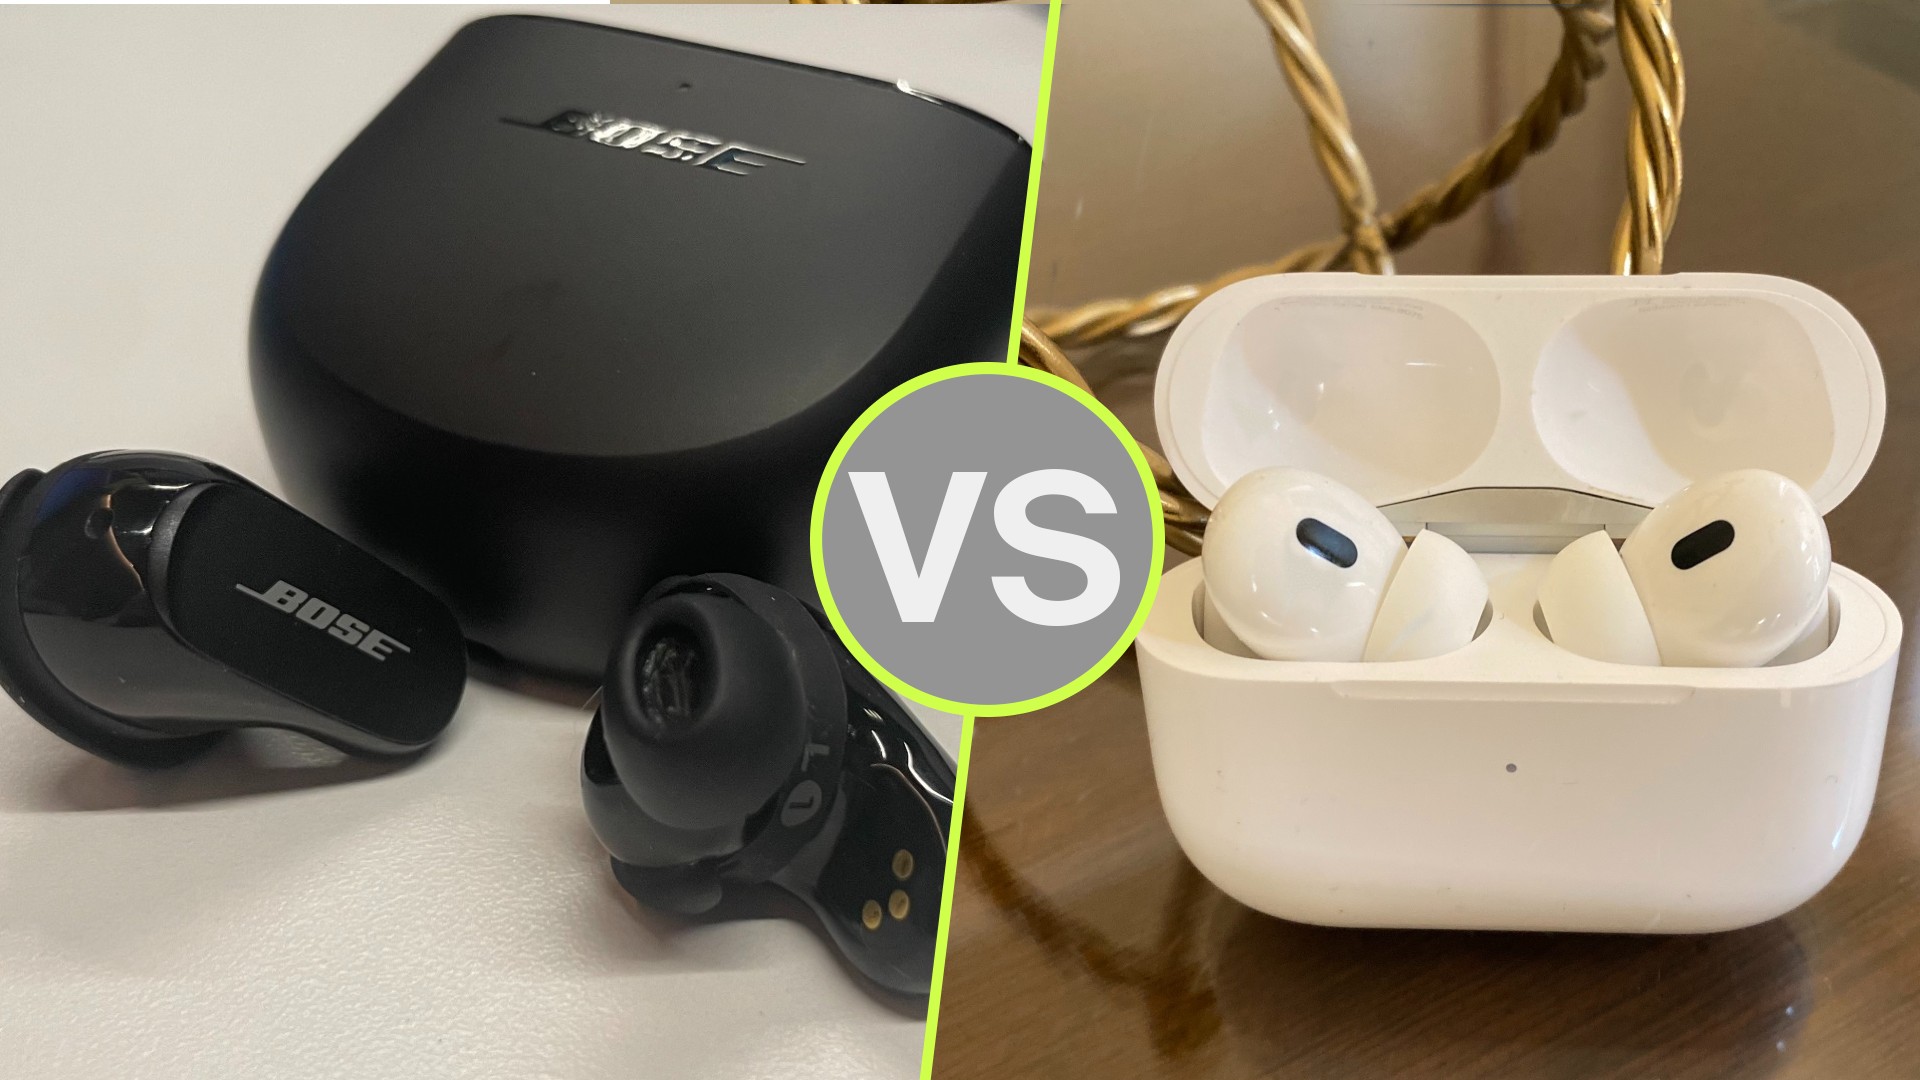 AirPods Pro 2 vs. Bose QuietComfort Buds 2 : quels écouteurs sans fil vous feront le plus vibrer ?